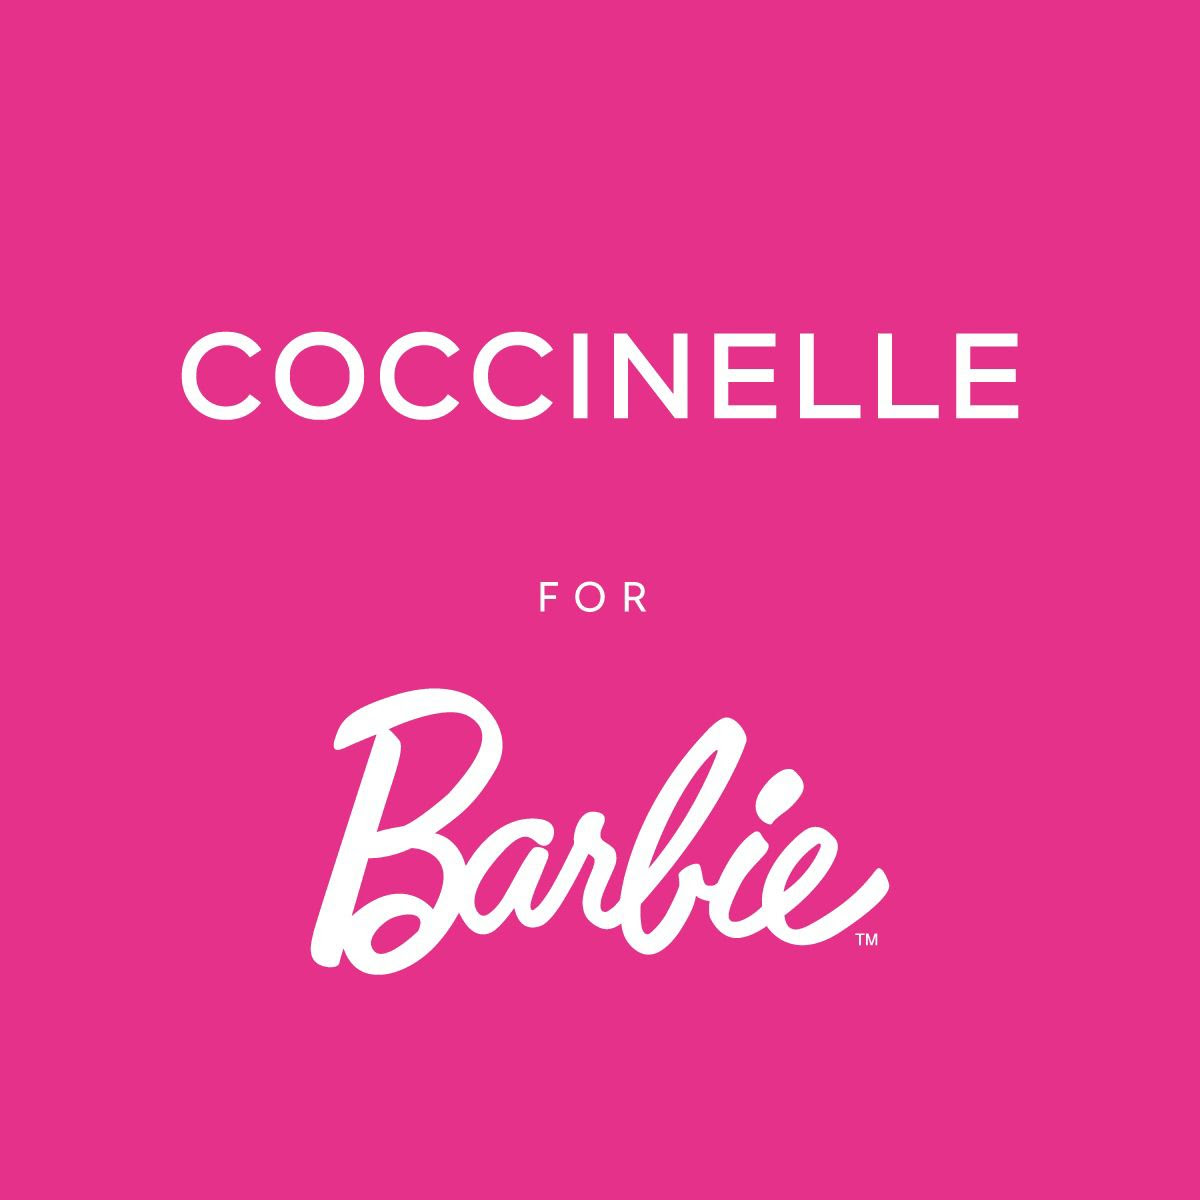 Coccinelle for Barbie: ekskluzivno u Karla trgovinama